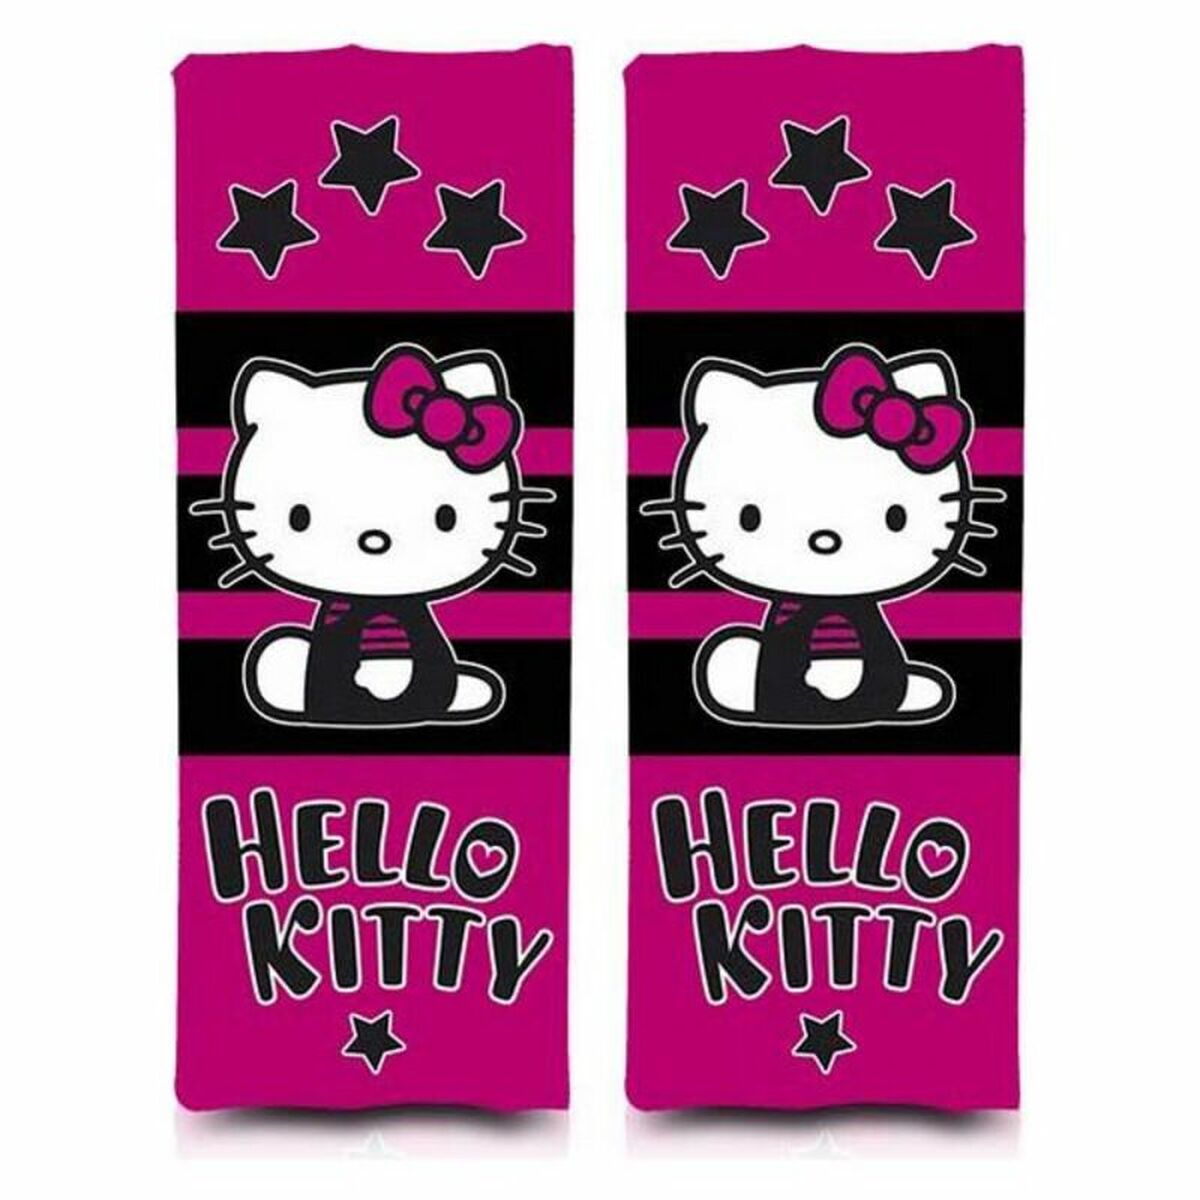 Osta tuote Turvavyön pehmusteet Hello Kitty verkkokaupastamme Korhone: Urheilu & Vapaa-aika 20% alennuksella koodilla VIIKONLOPPU